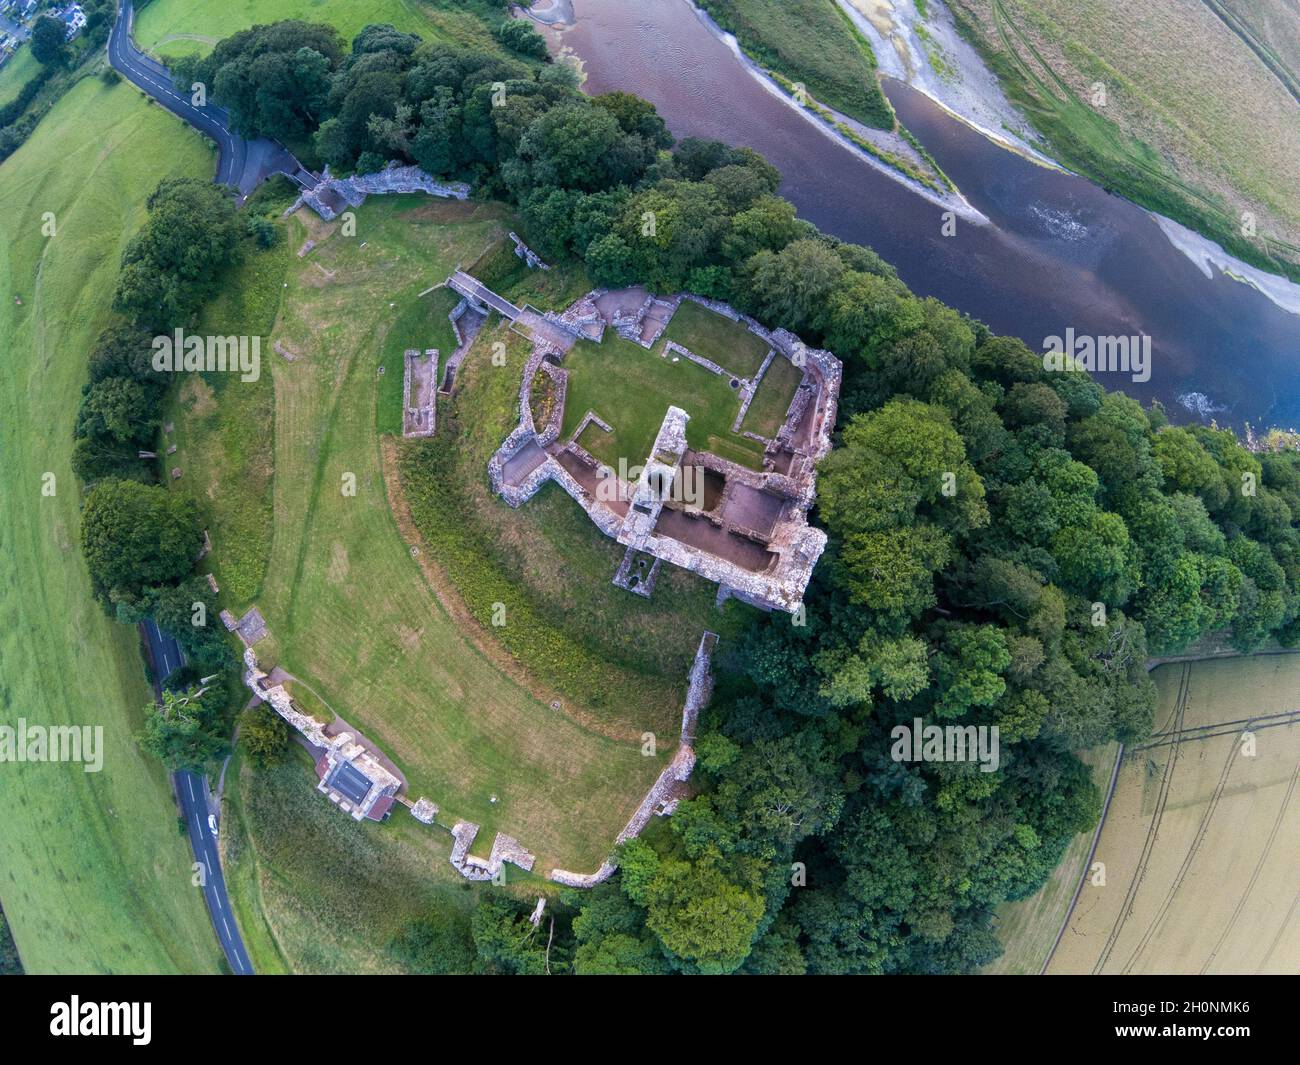 Le château de Norham, en position dominante au-dessus de la rivière Tweed, était l'un des plus puissants de la frontière anglo-écossaise. Northumberland, Angleterre, Royaume-Uni Banque D'Images